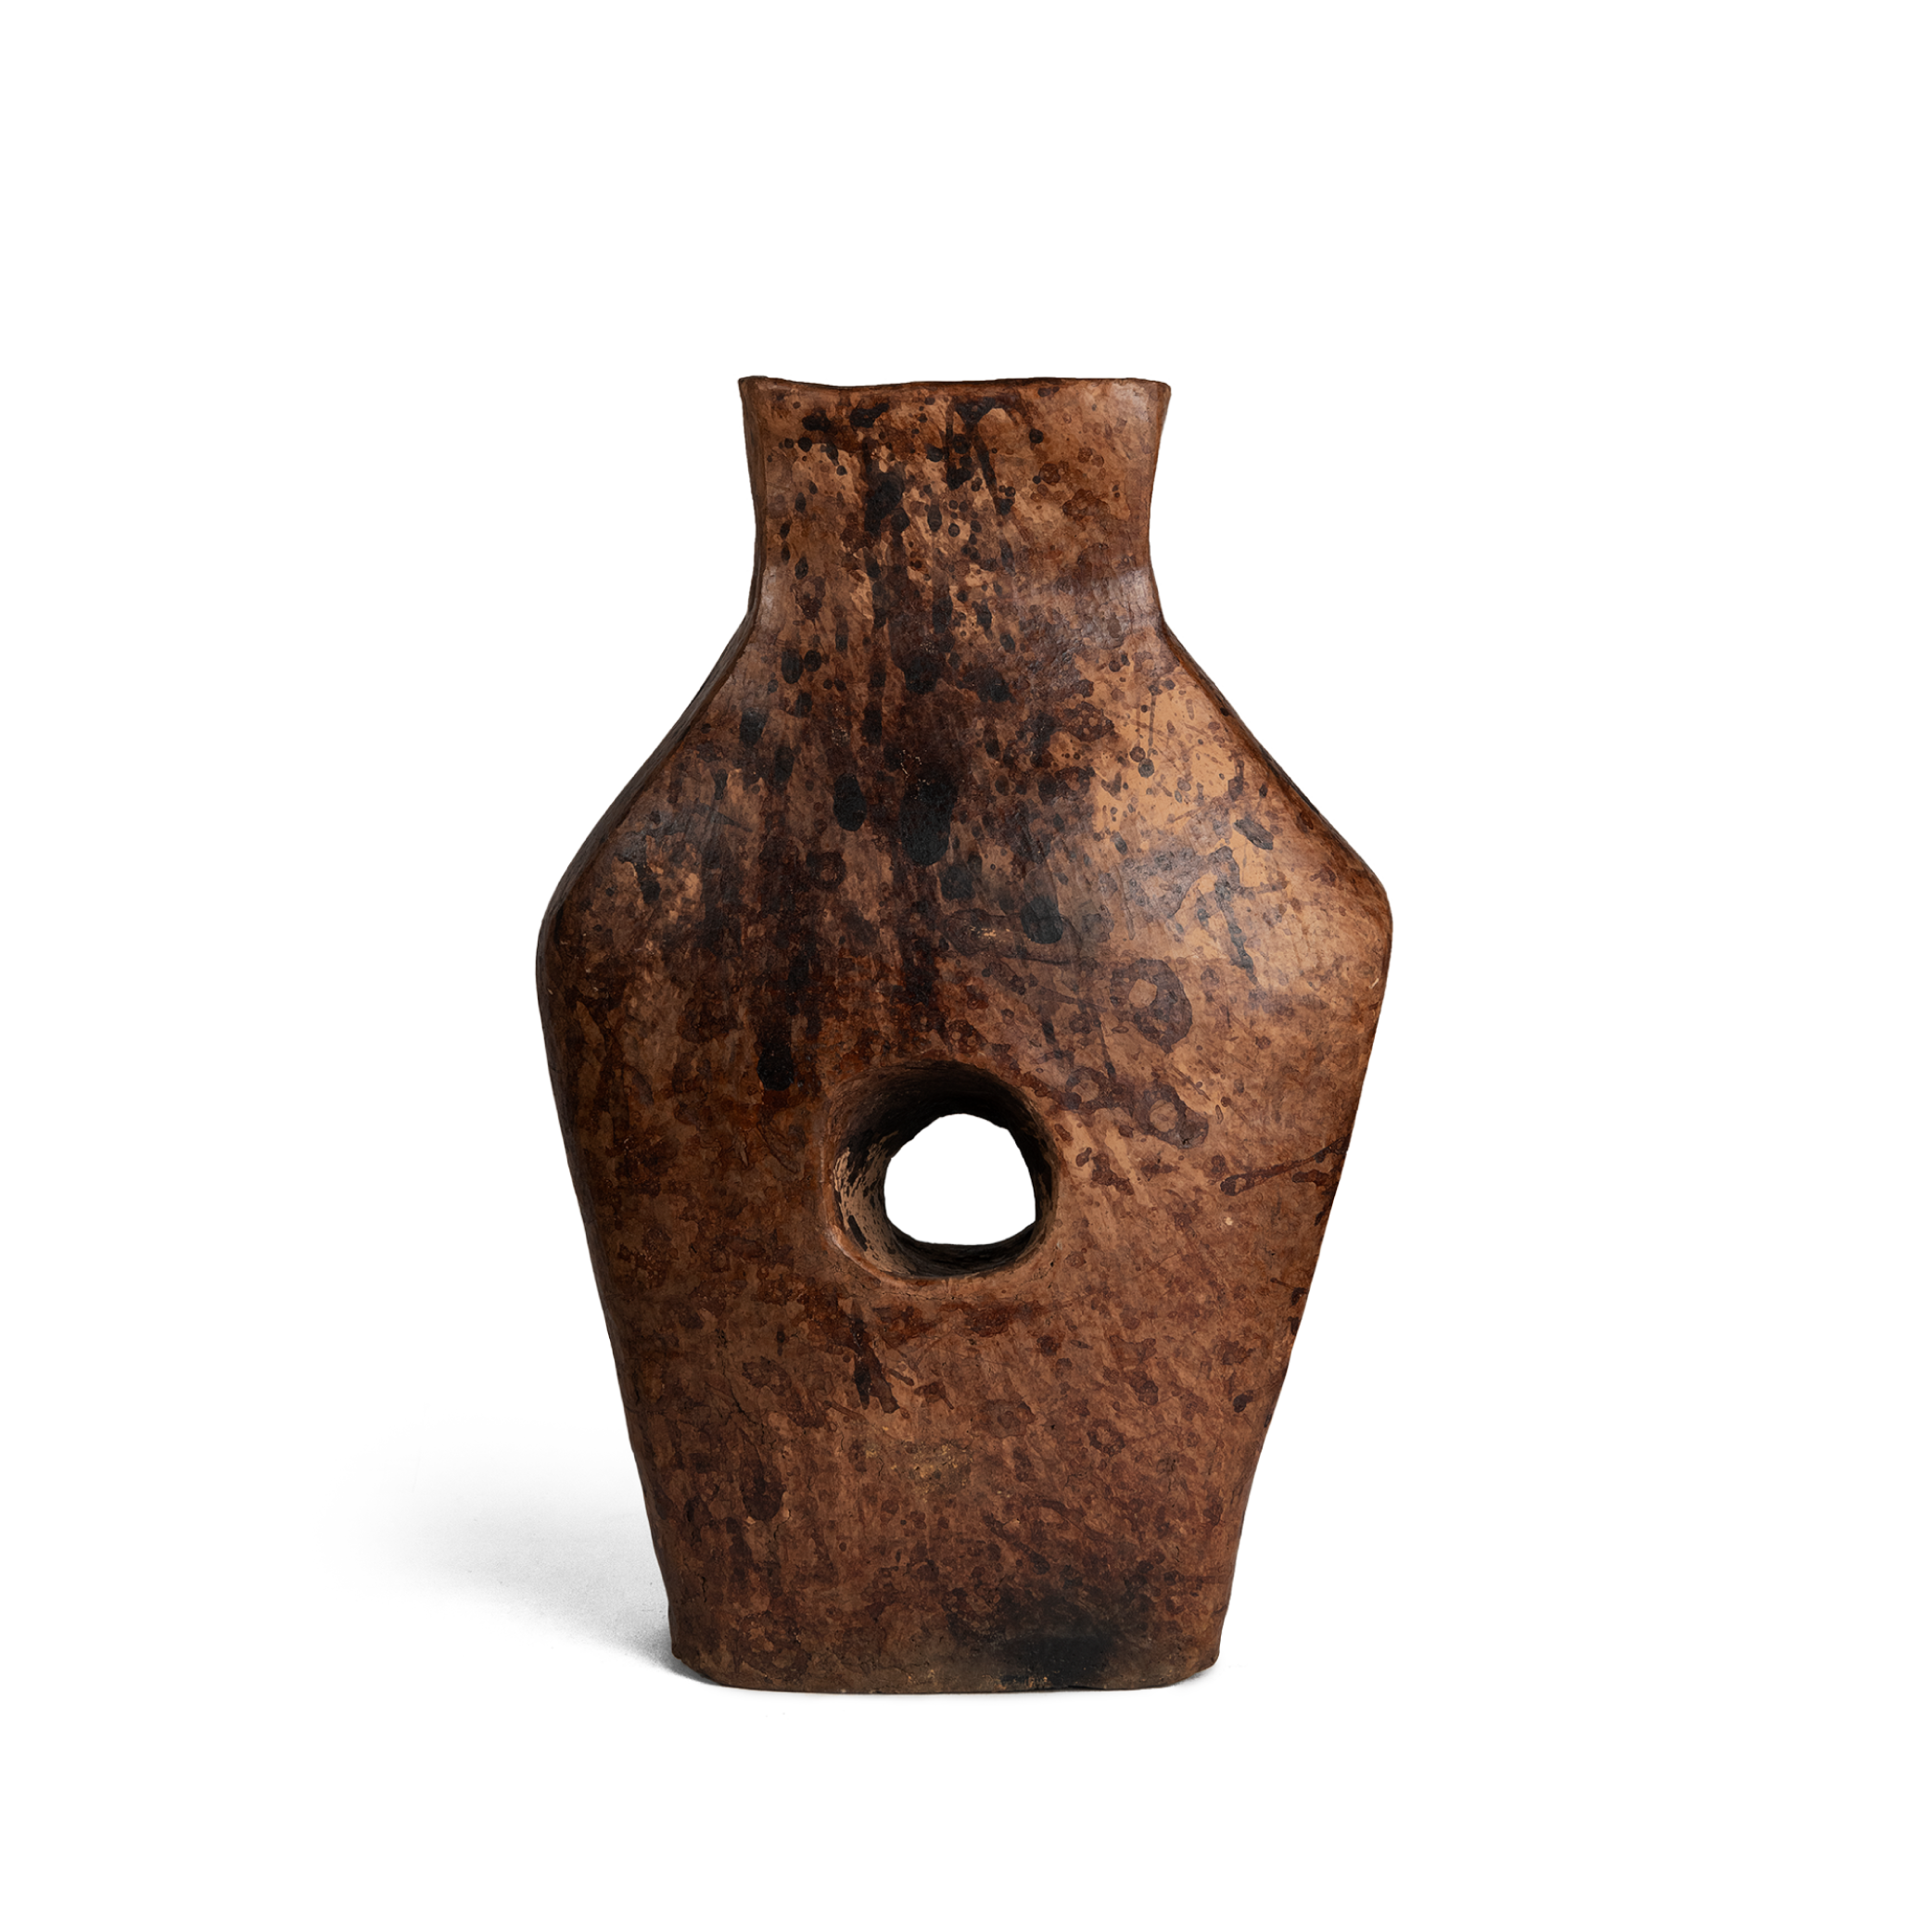 The Leikai Vase